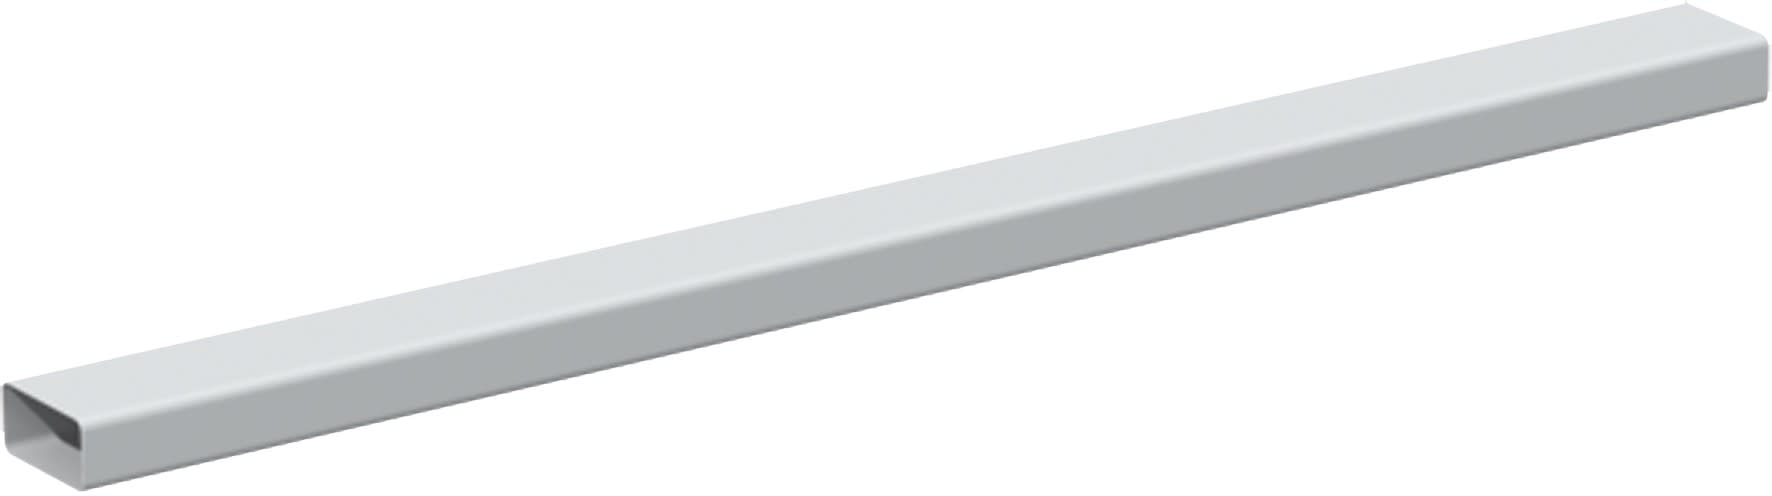 S&P - Conduit rectangulaire PVC rigide 55 x 220 mm, longueur 1.5 m, gamme TUBPLA